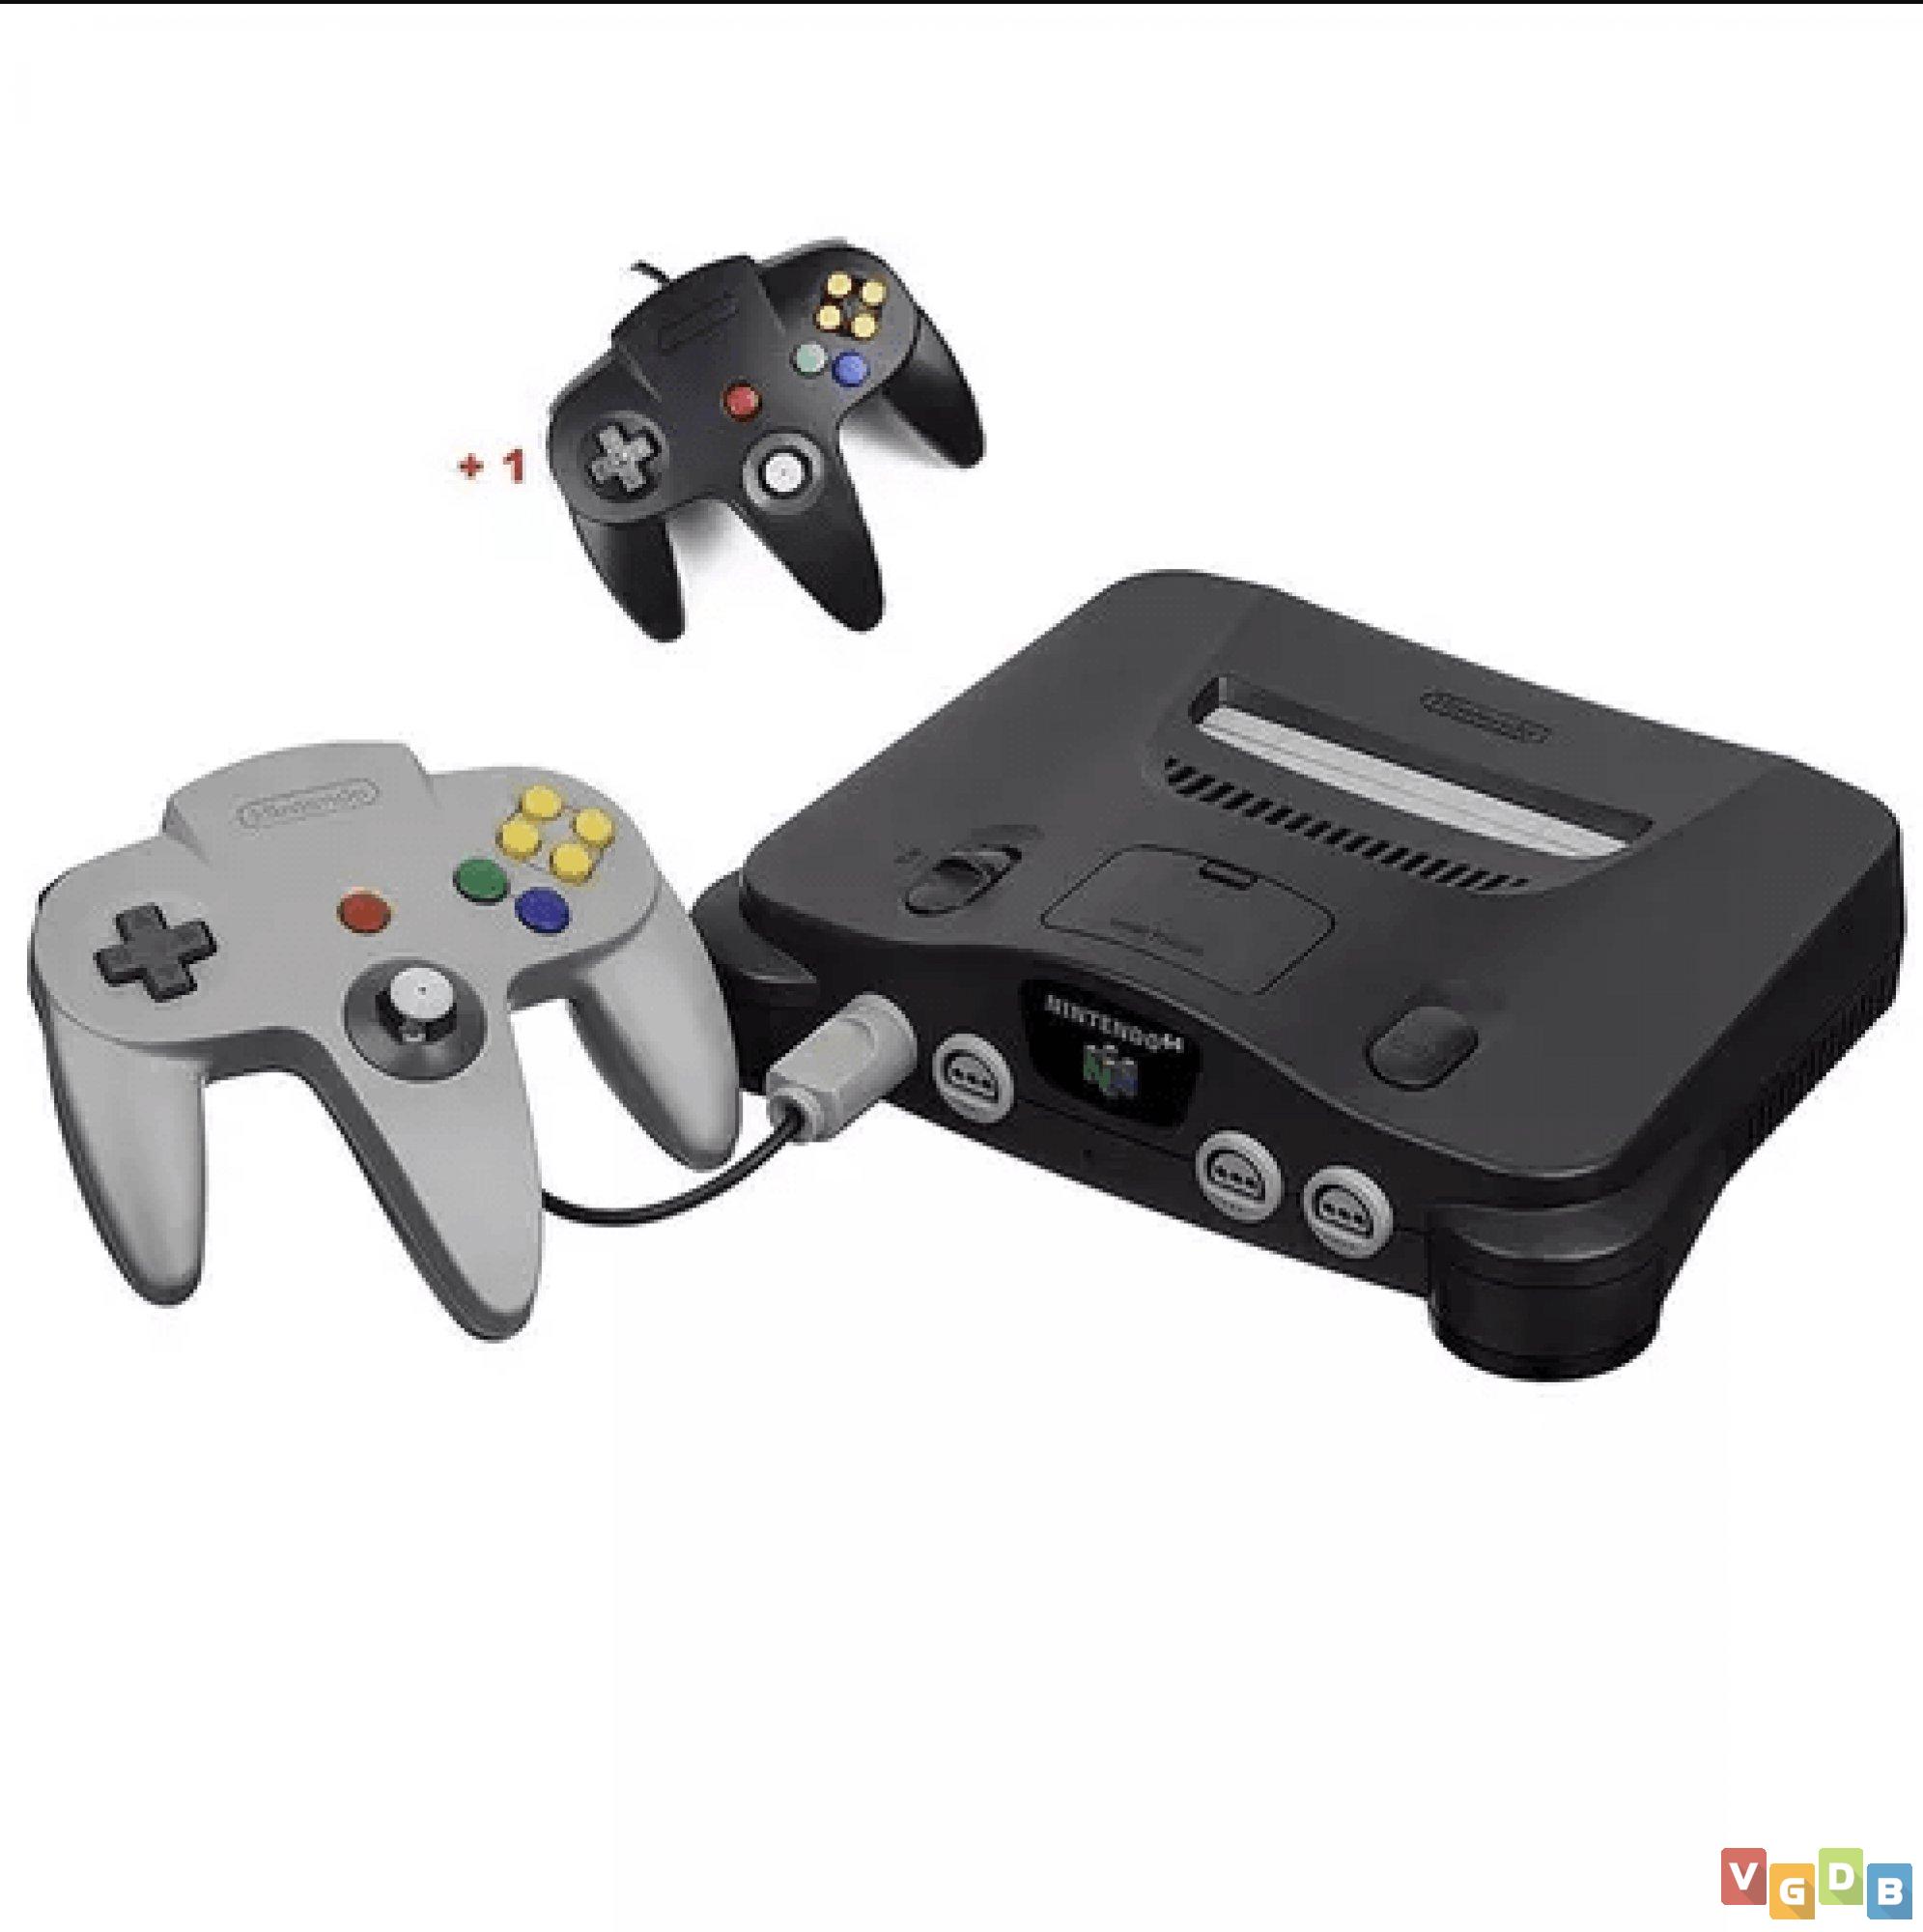 Os 5 melhores Jogos de Aventura para Nintendo 64 lançados em 1999